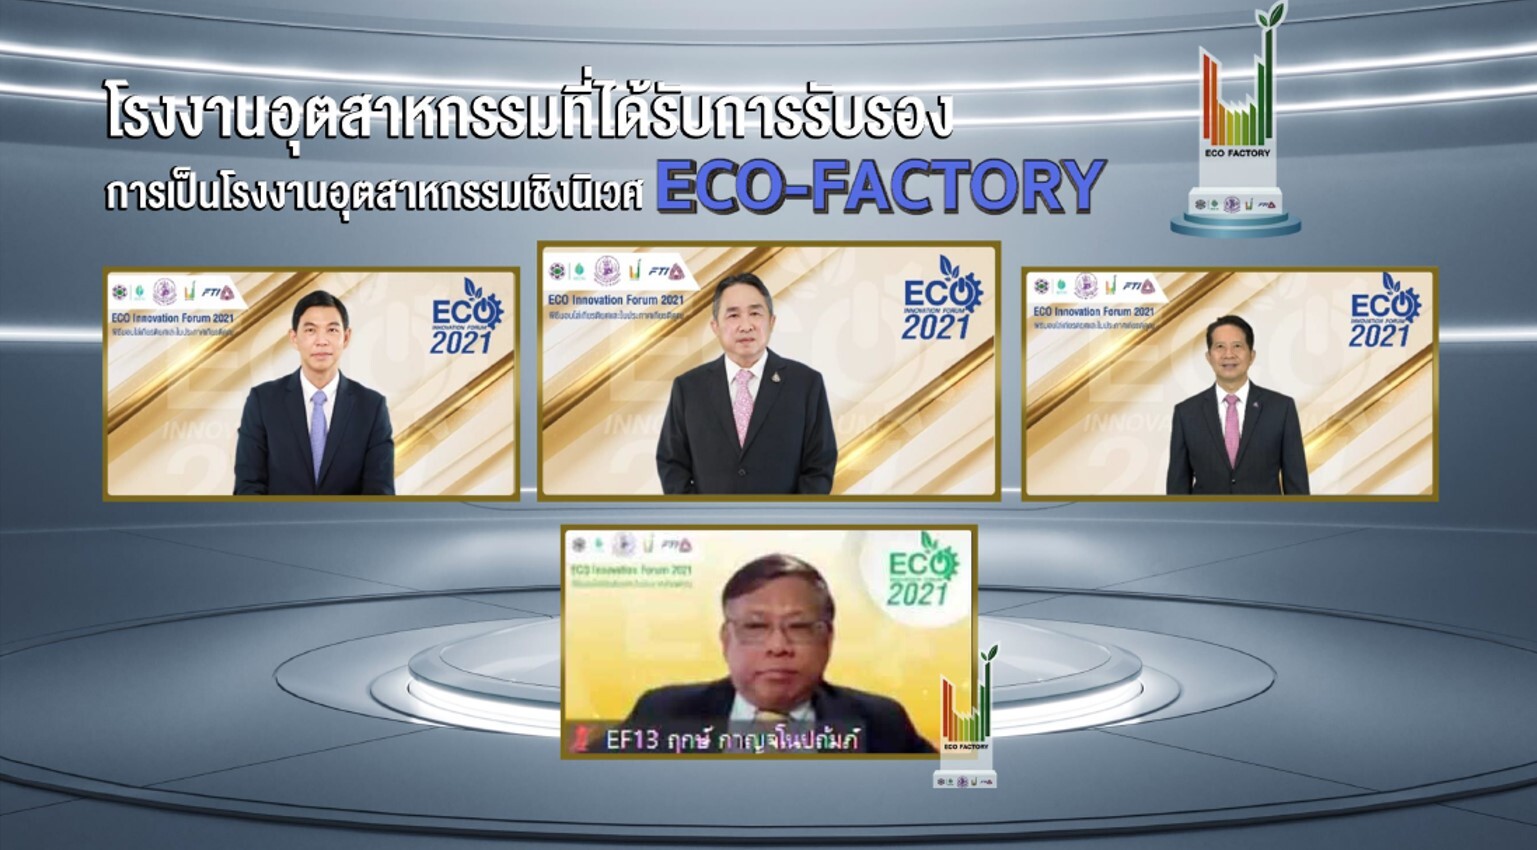 นิคม RIL ในเอสซีจี เคมิคอลส์ คว้า Eco-World Class แห่งแรกในไทย ต่อเนื่อง 3 ปีซ้อน ชูโมเดลการพัฒนาอุตสาหกรรมควบคู่กับการดูแลชุมชนและสิ่งแวดล้อม